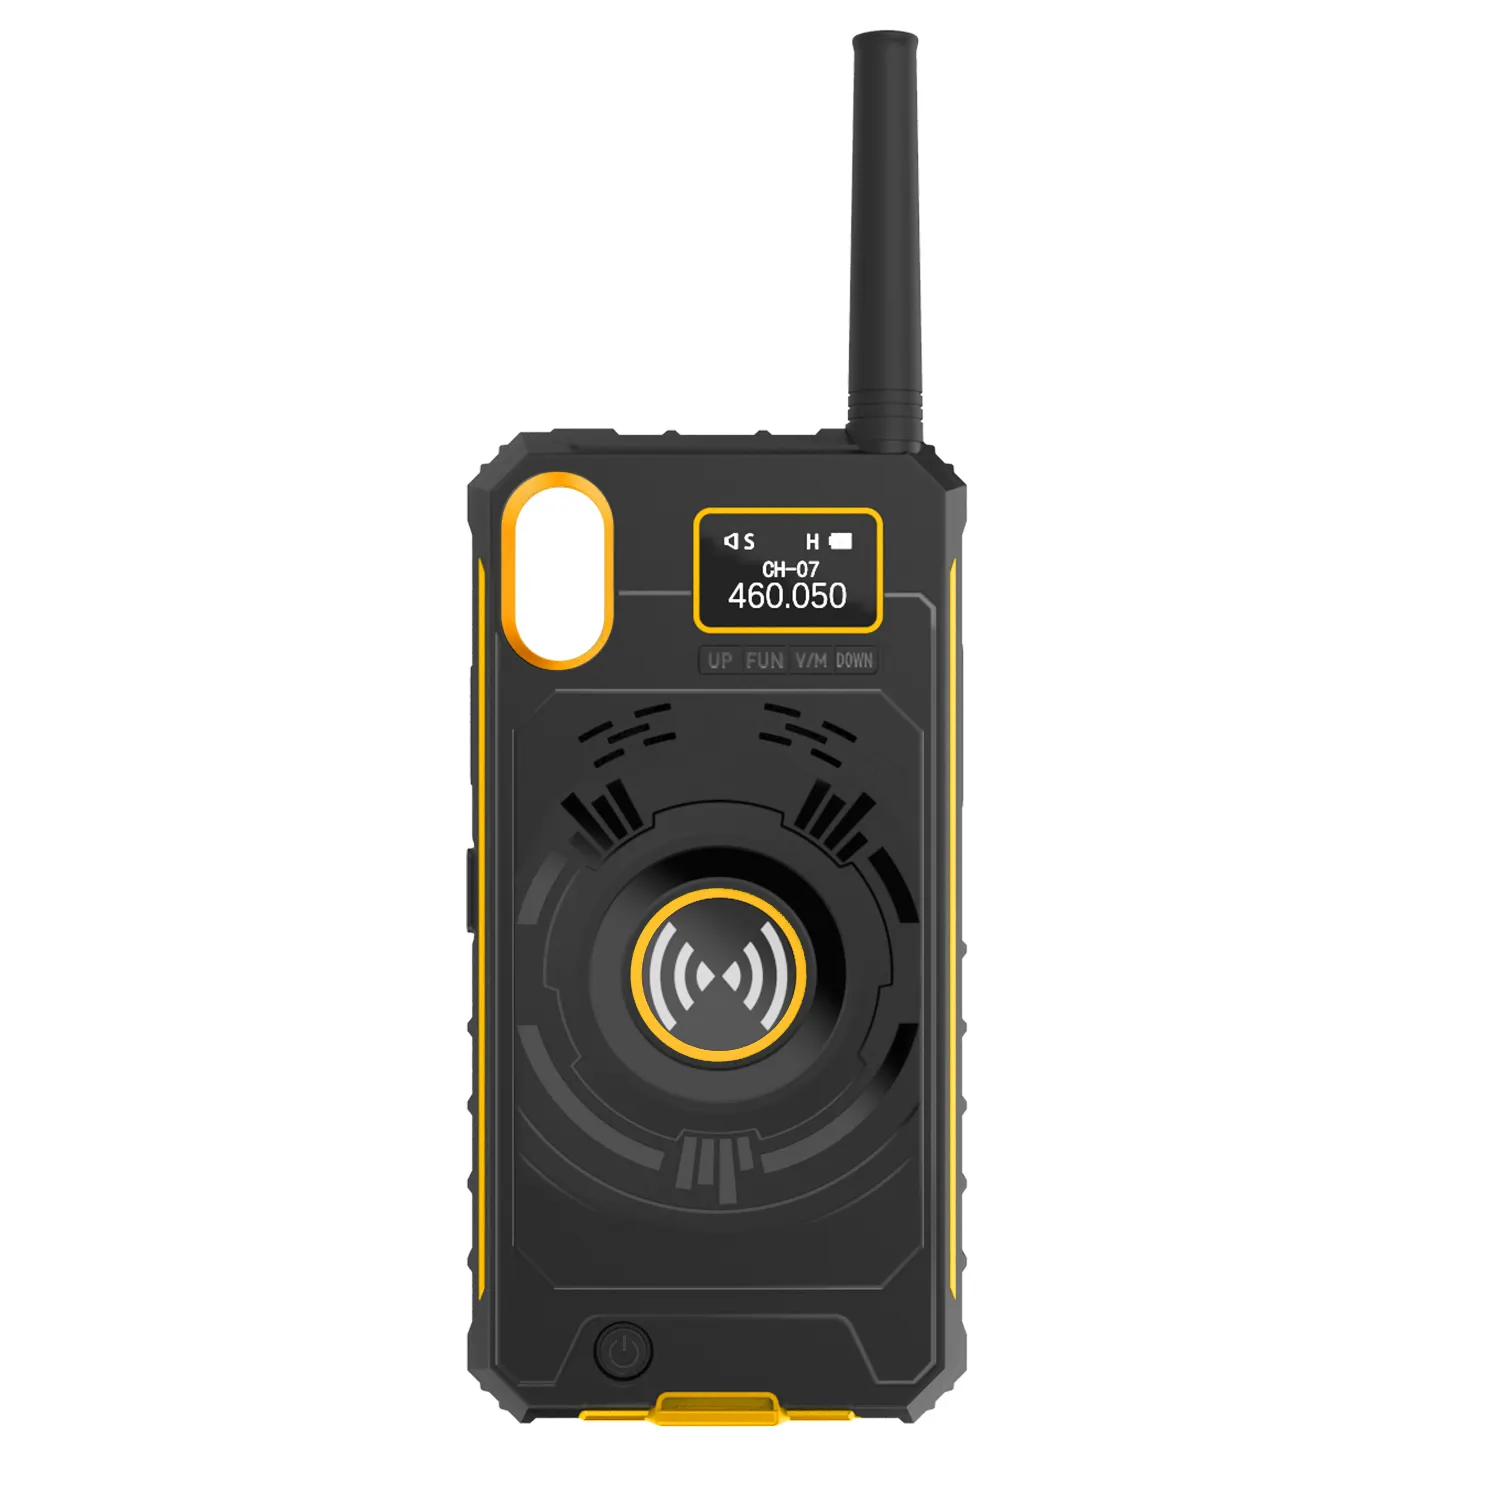 Analog radyo CE FCC sertifikası güç banka walkie talkie Iphone durumda 3KM çift anten USB şarj aleti iki yönlü telsiz JM-01